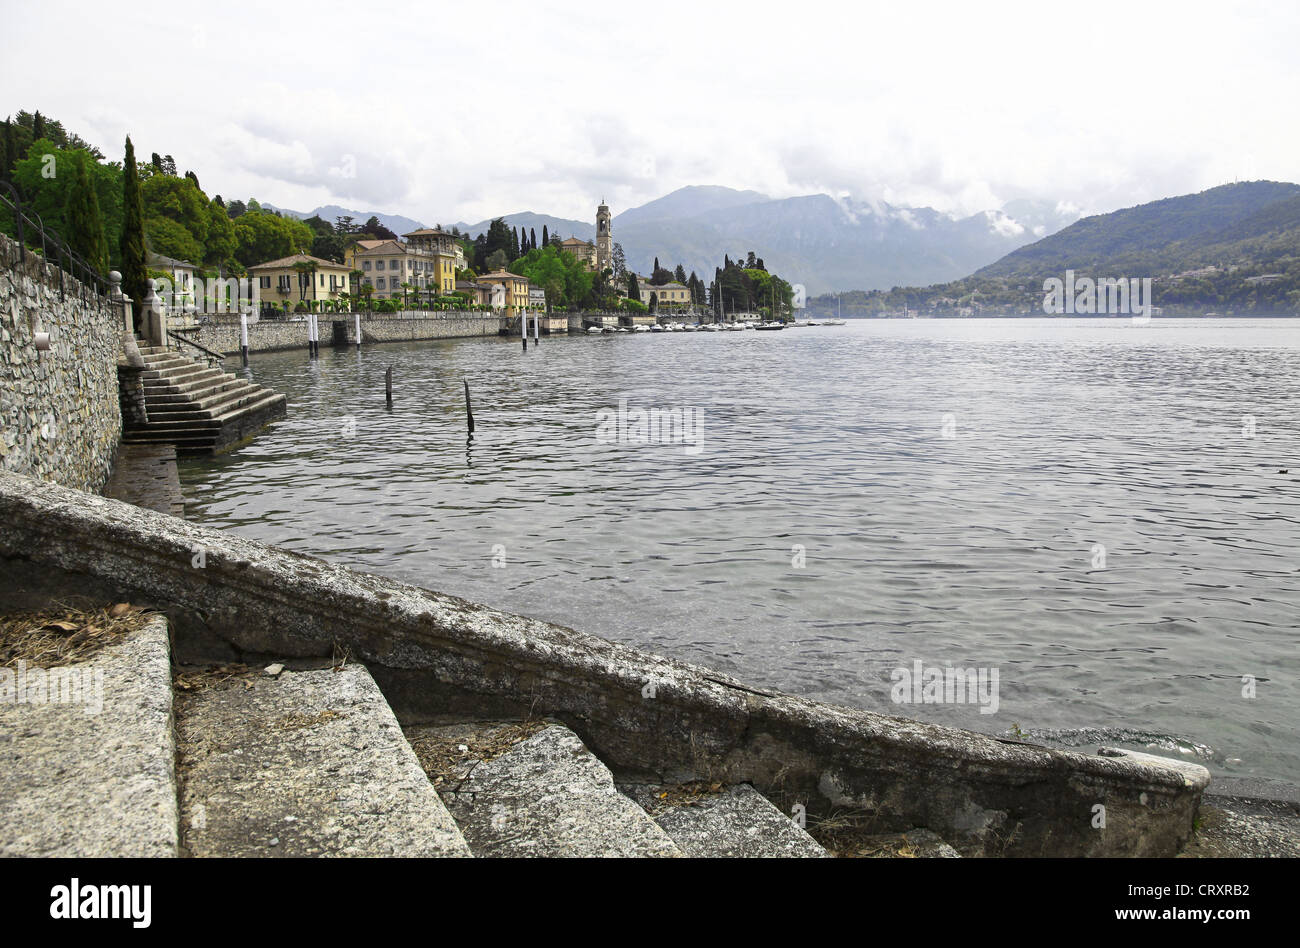 La ciudad italiana de Tremezzo, a orillas del Lago de Como, en Lombardía, Italia Foto de stock